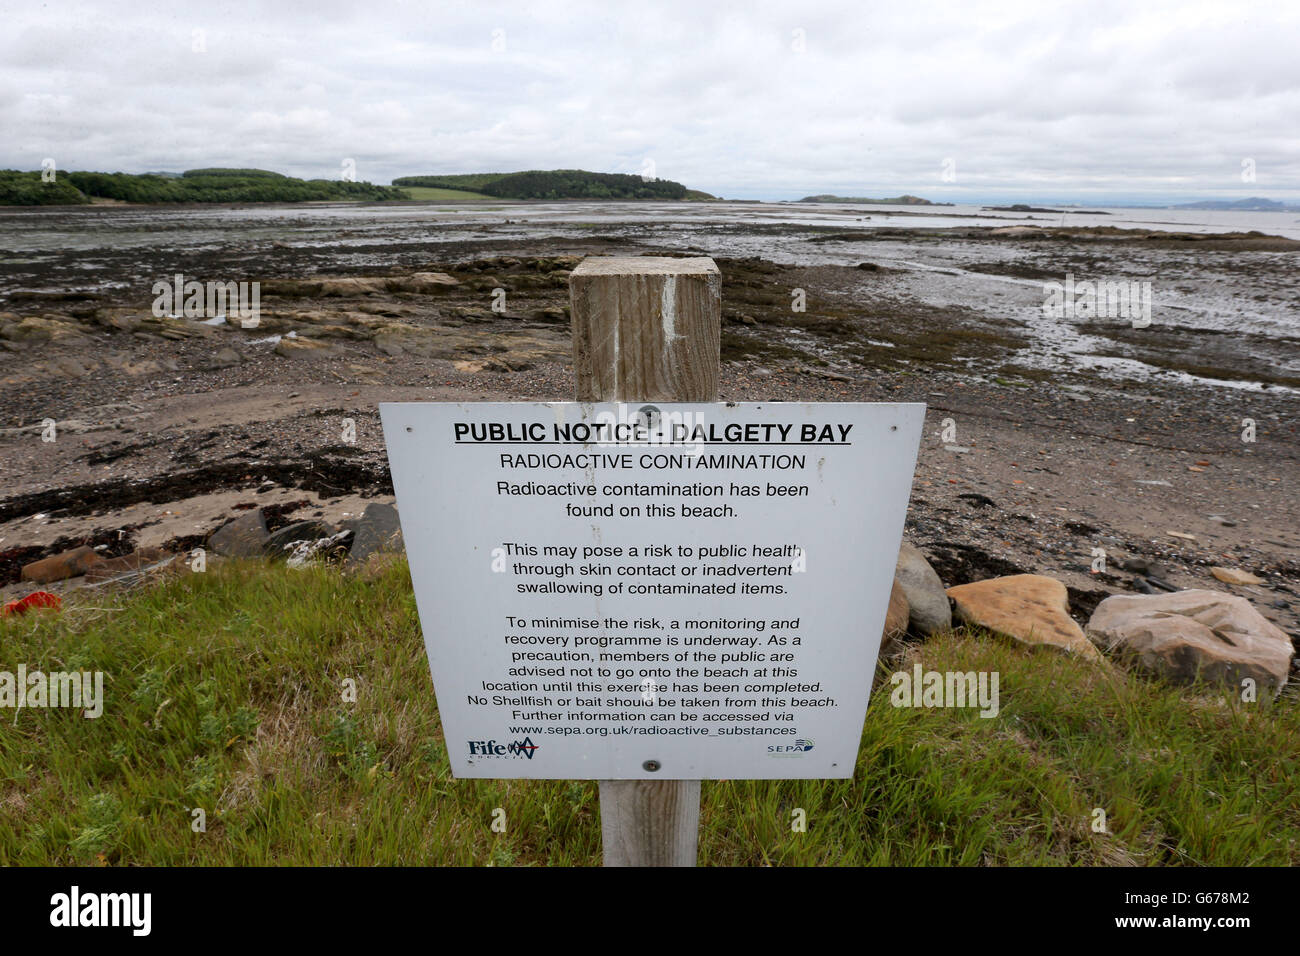 Ein Schild neben dem Strand von Dalgety Bay in Fife als ehemaliger Premierminister Gordon Brown hat das Verteidigungsministerium aufgefordert, die Sanierung des Strandes zu finanzieren, der durch Strahlung verschmutzt ist, nachdem eine Umweltbehörde die Regierungsabteilung als verantwortlich bezeichnet hat. Stockfoto